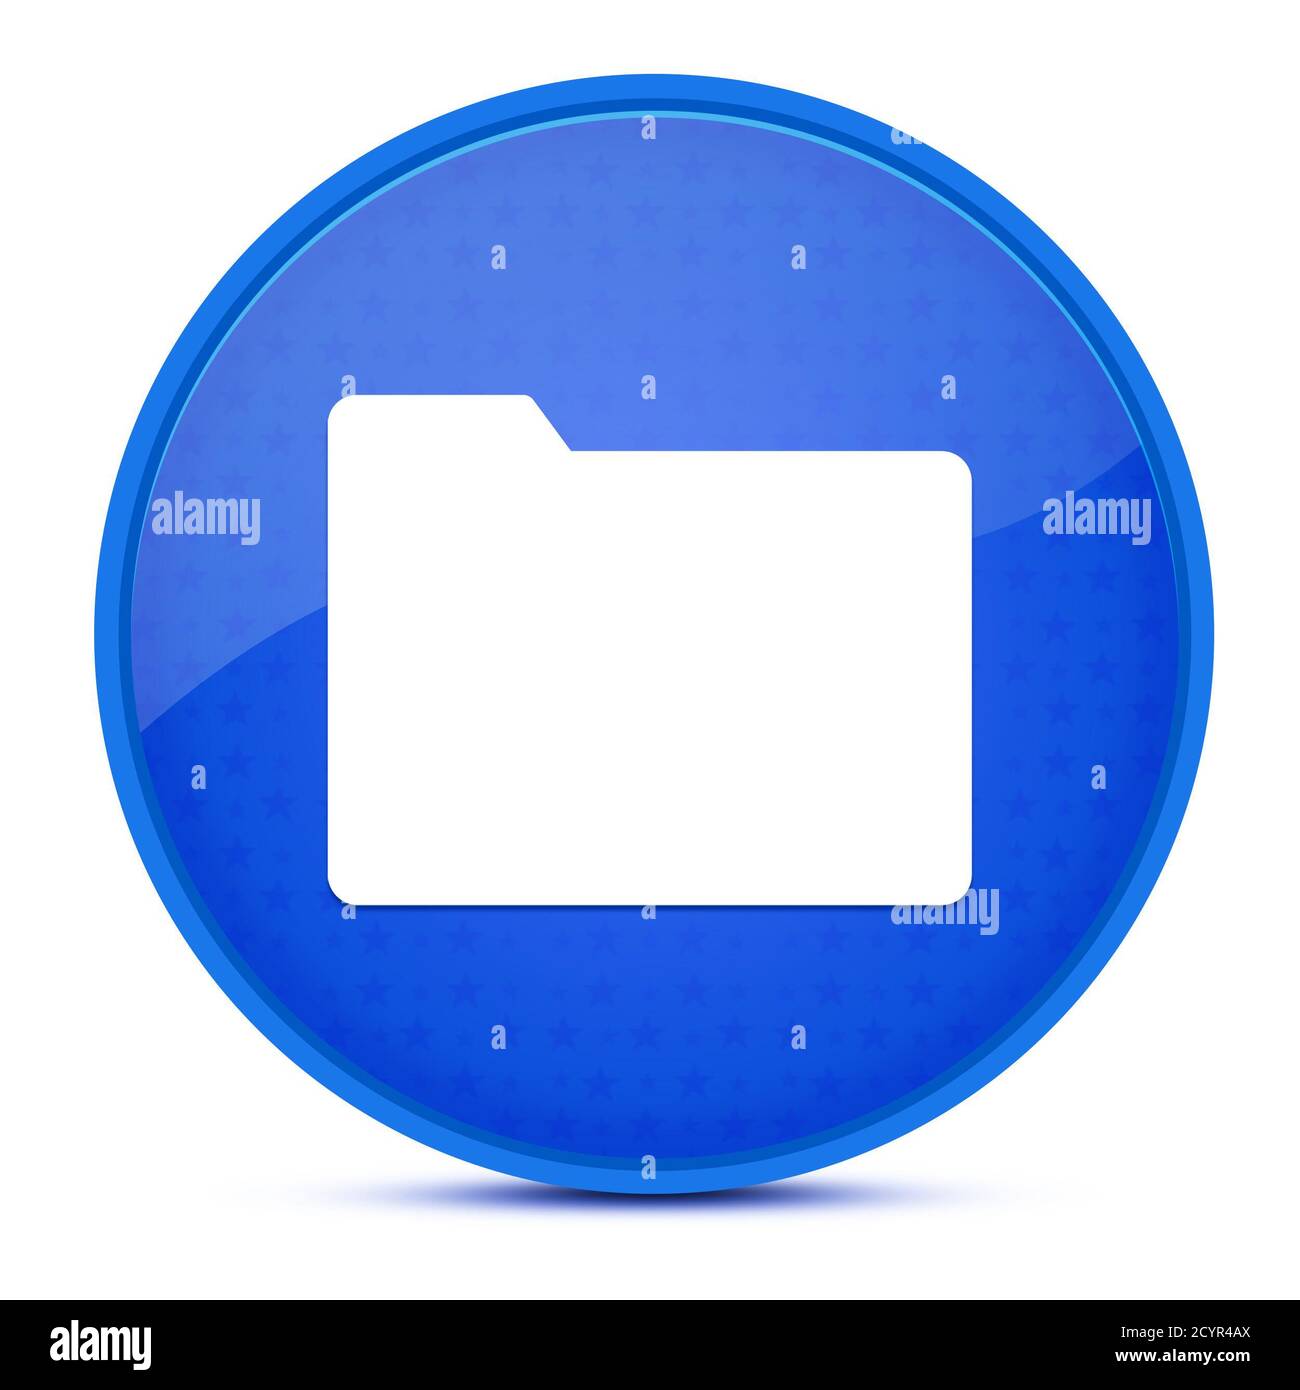 Ästhetische glänzende blaue runde Knopf abstrakte Illustration Stockfoto